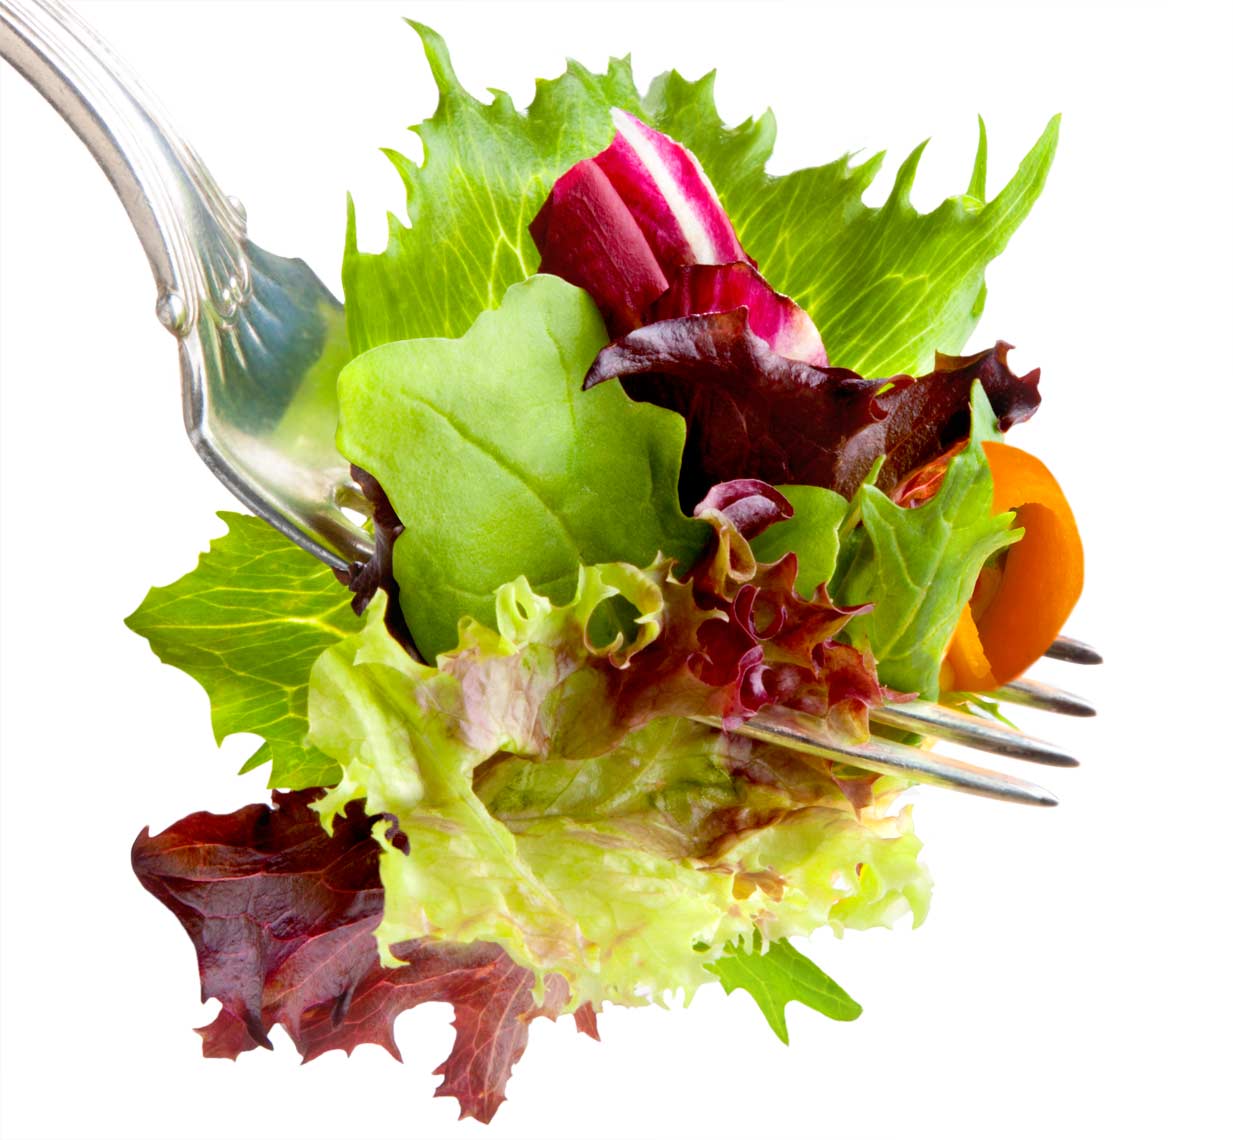 Salad fork